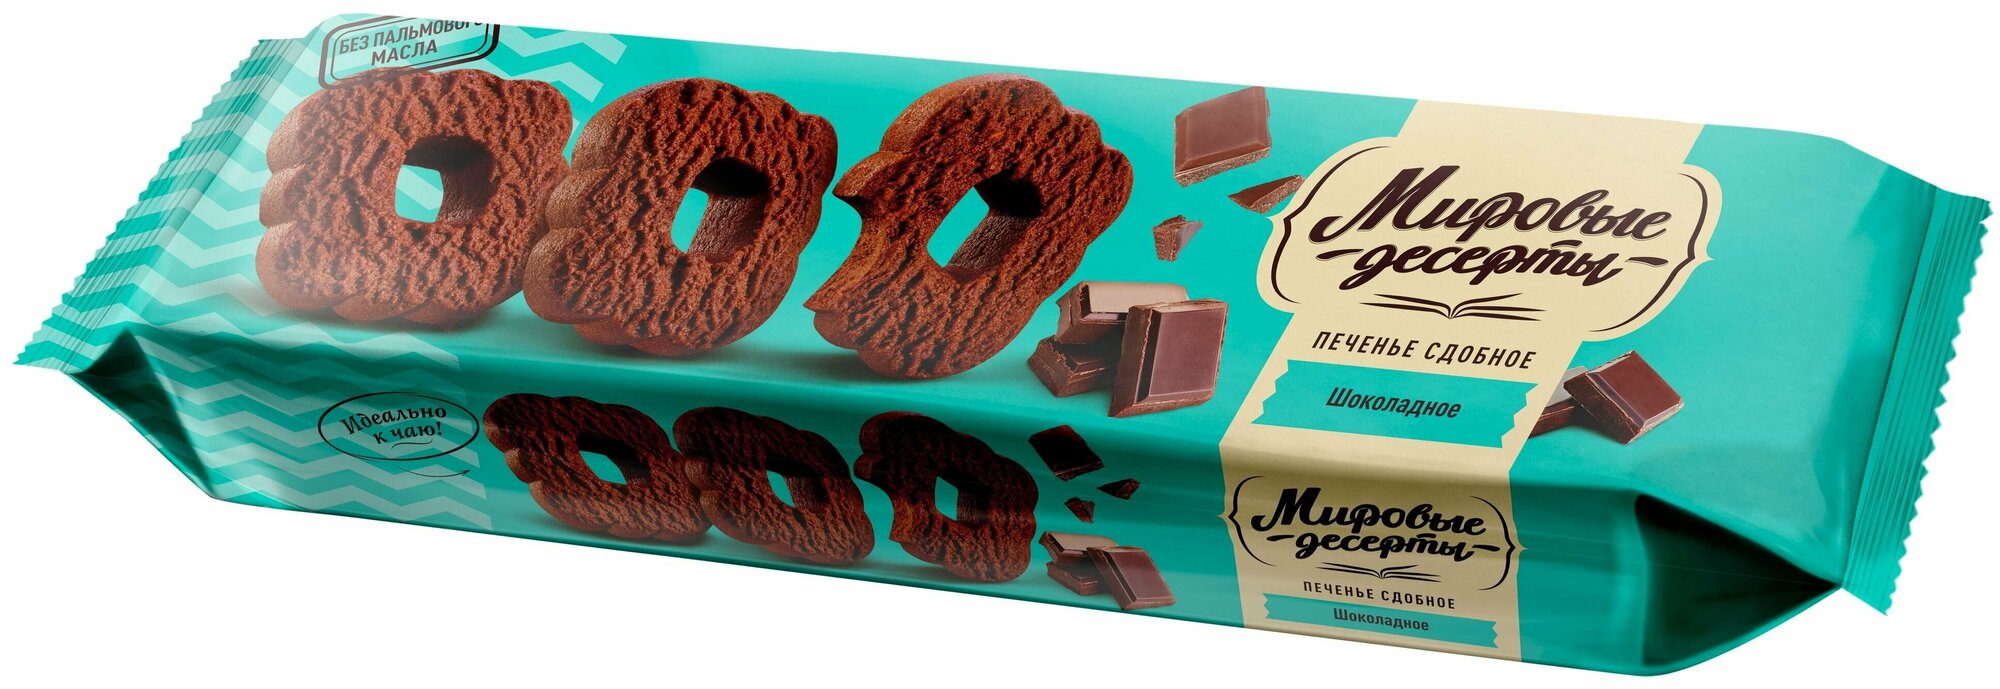 Печенье сдобное "Шоколадное" с насыщенным вкусом и ароматом шоколада, 160 грамм, Брянконфи, Изготовлено по ГОСТ 24901-2014, Артикул - 3044283